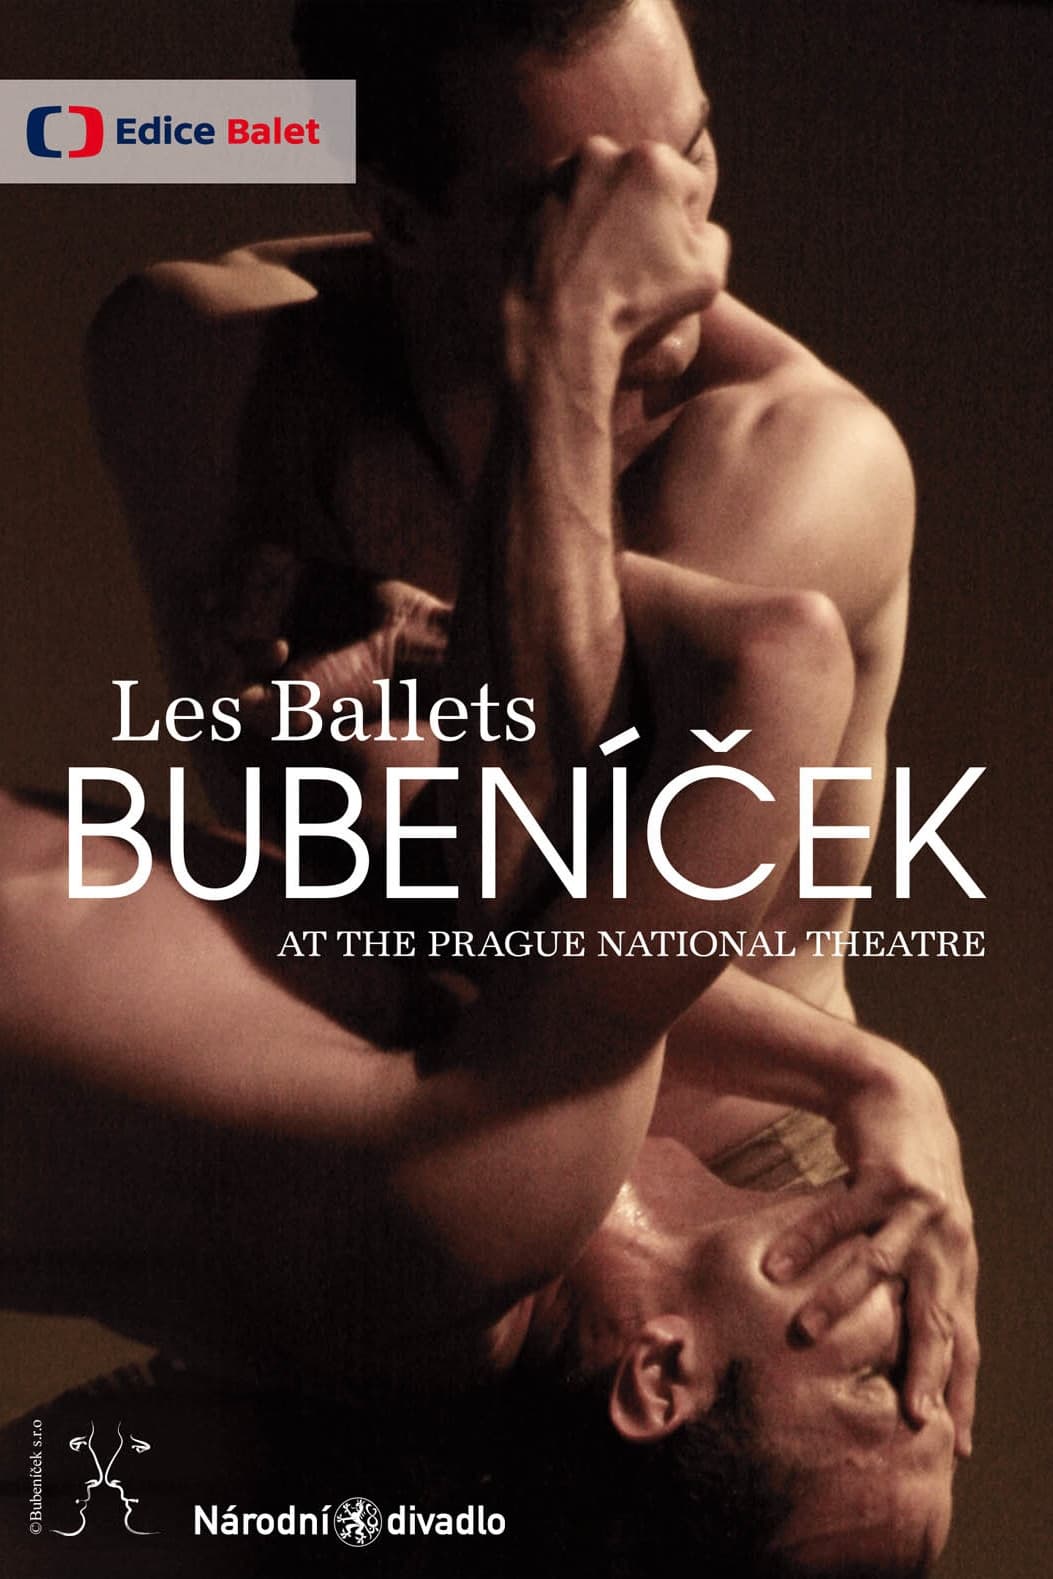 Les Ballets Bubeníček